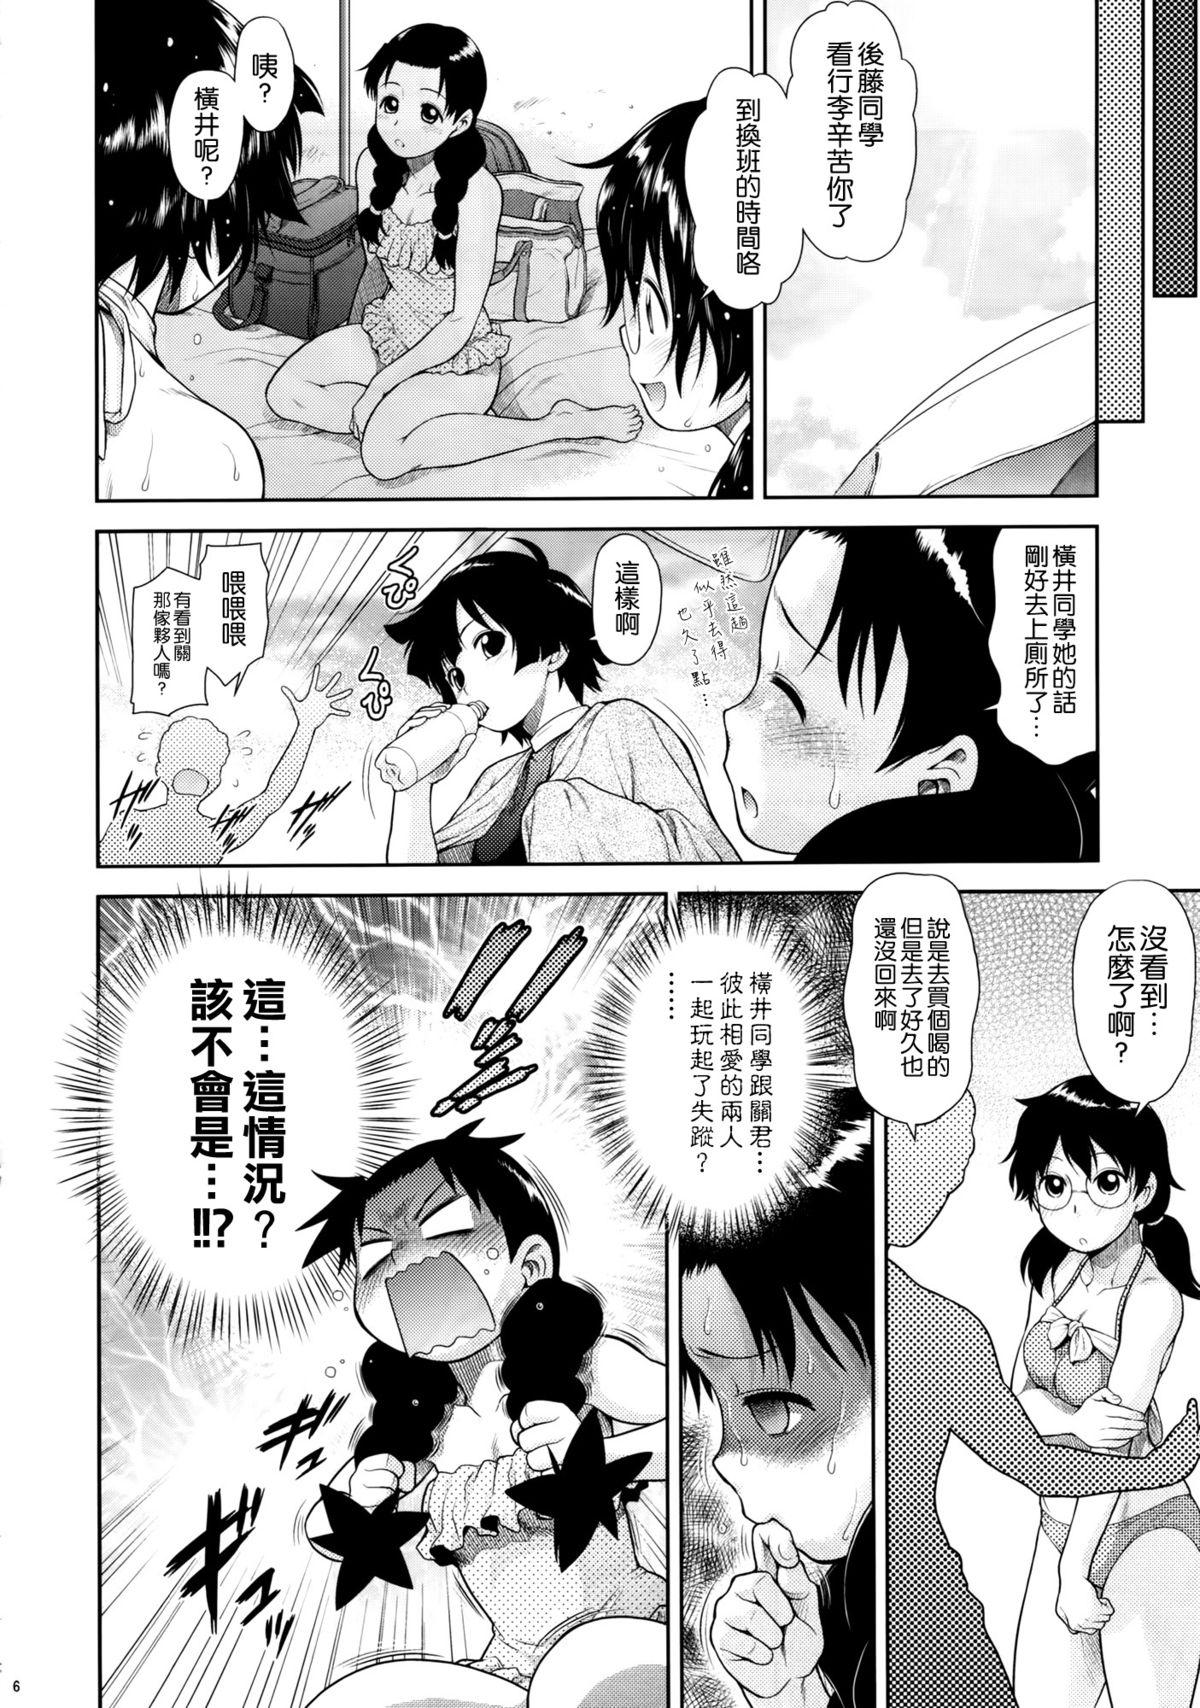 Groping Tonari no Y-san 4jikanme - Tonari no seki-kun Romantic - Page 6